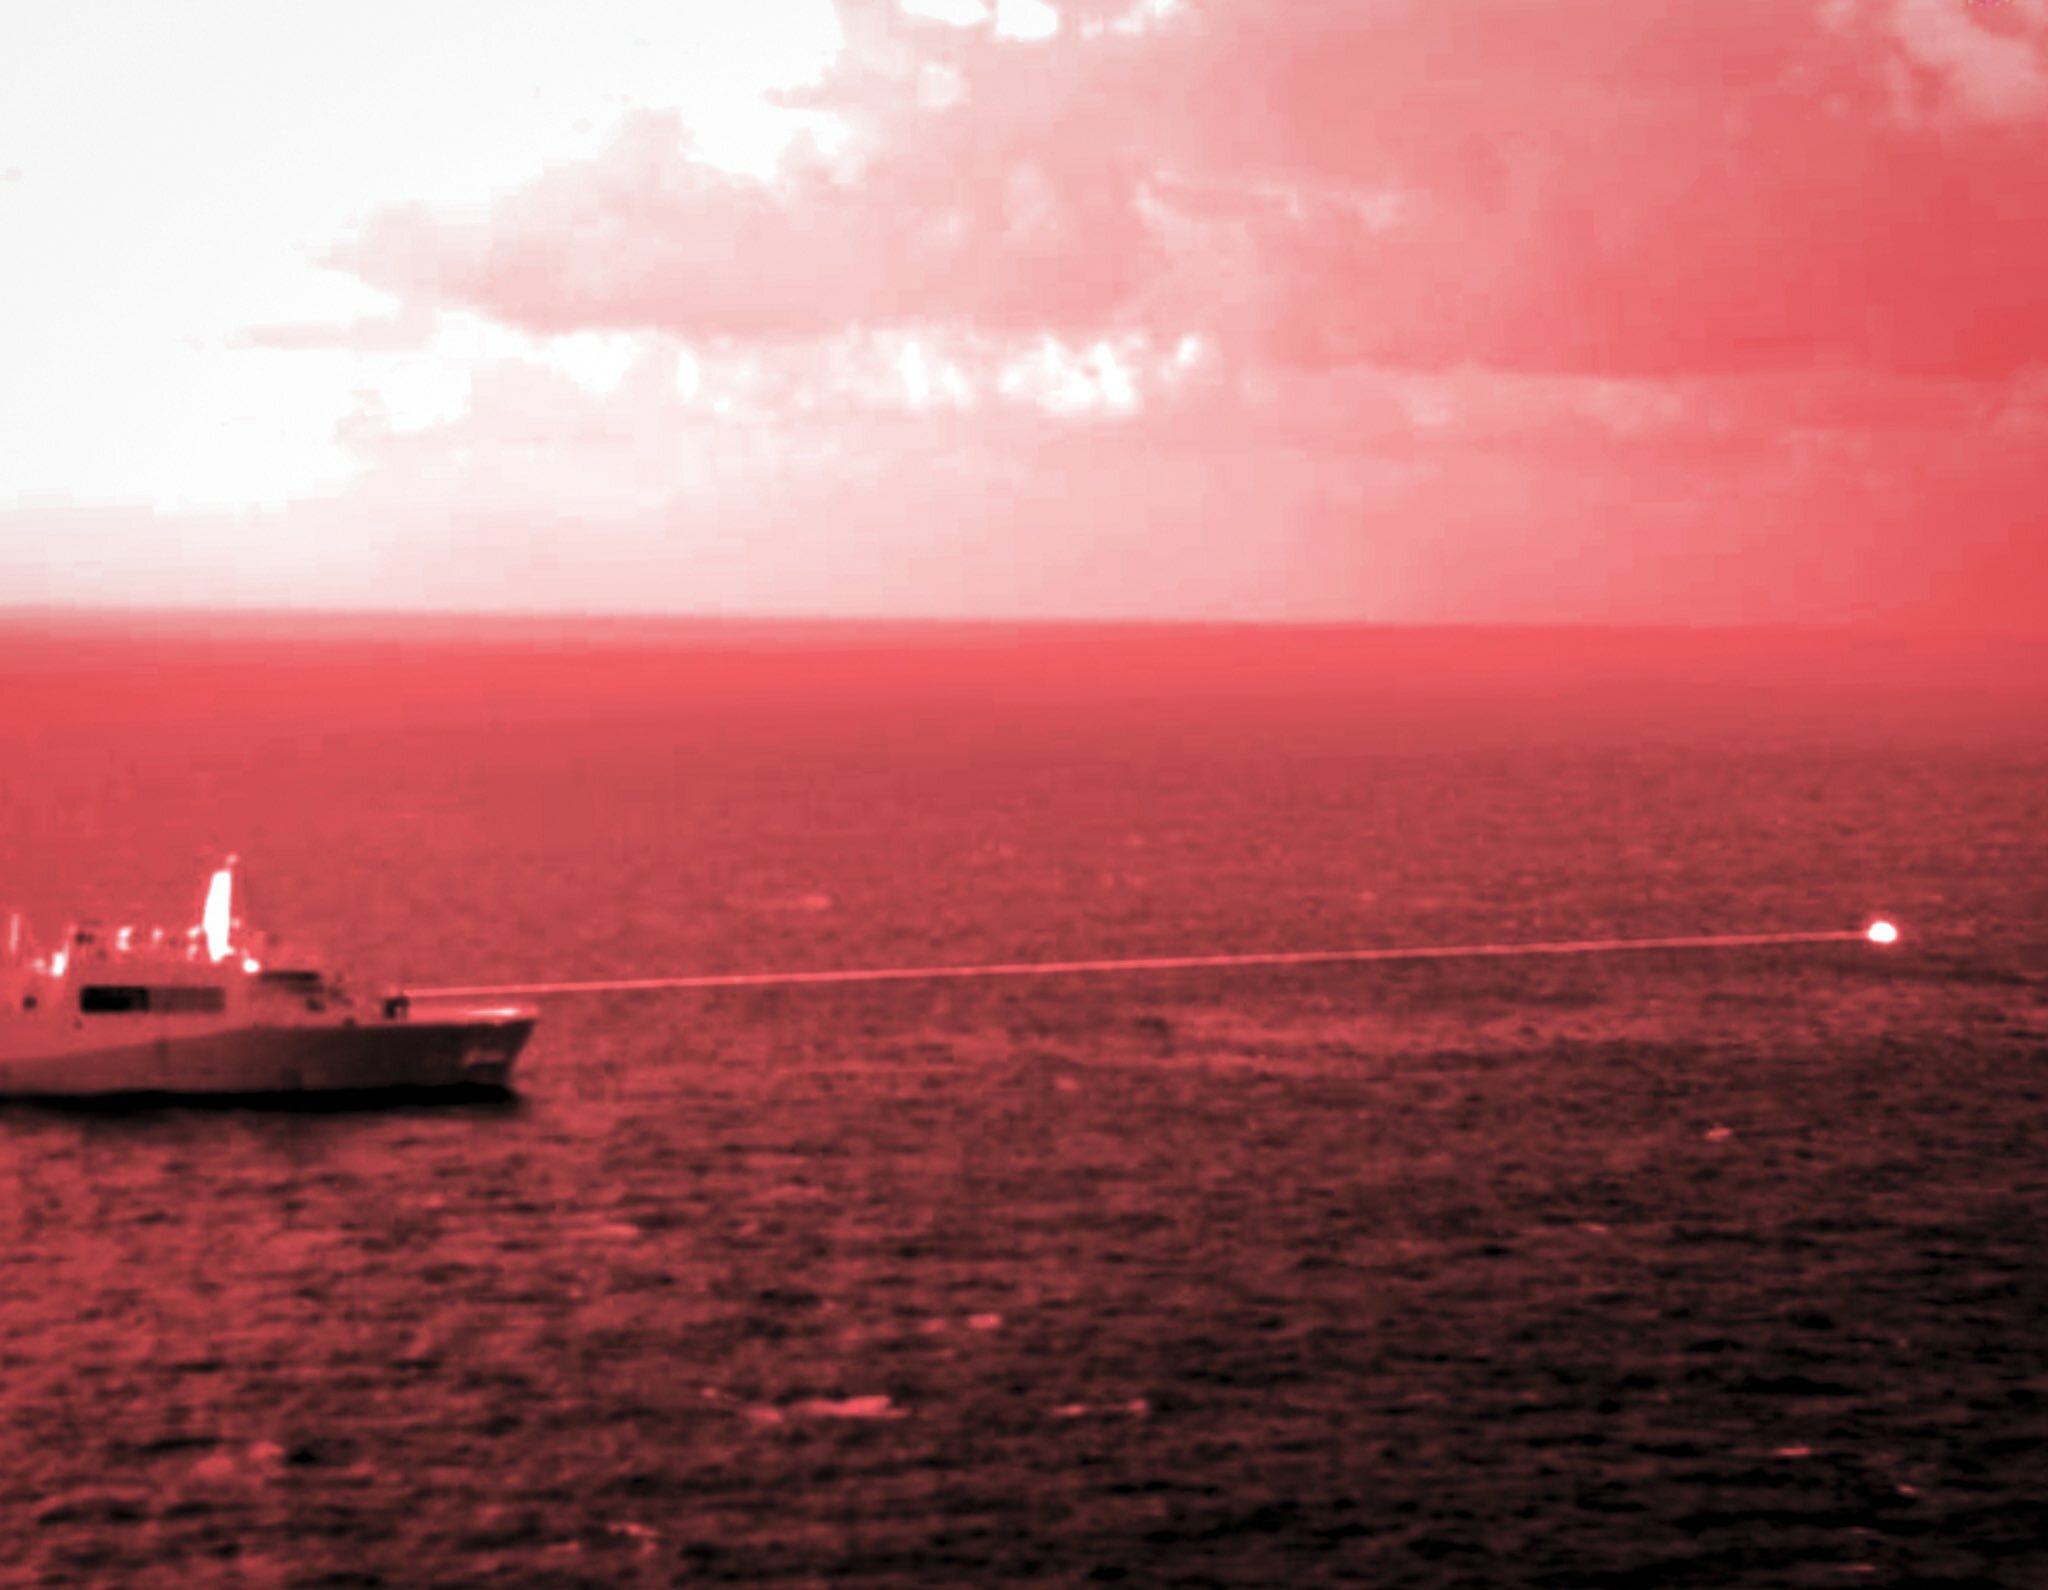 Корабль ВМС США выстрелил лазером в Аденском заливе